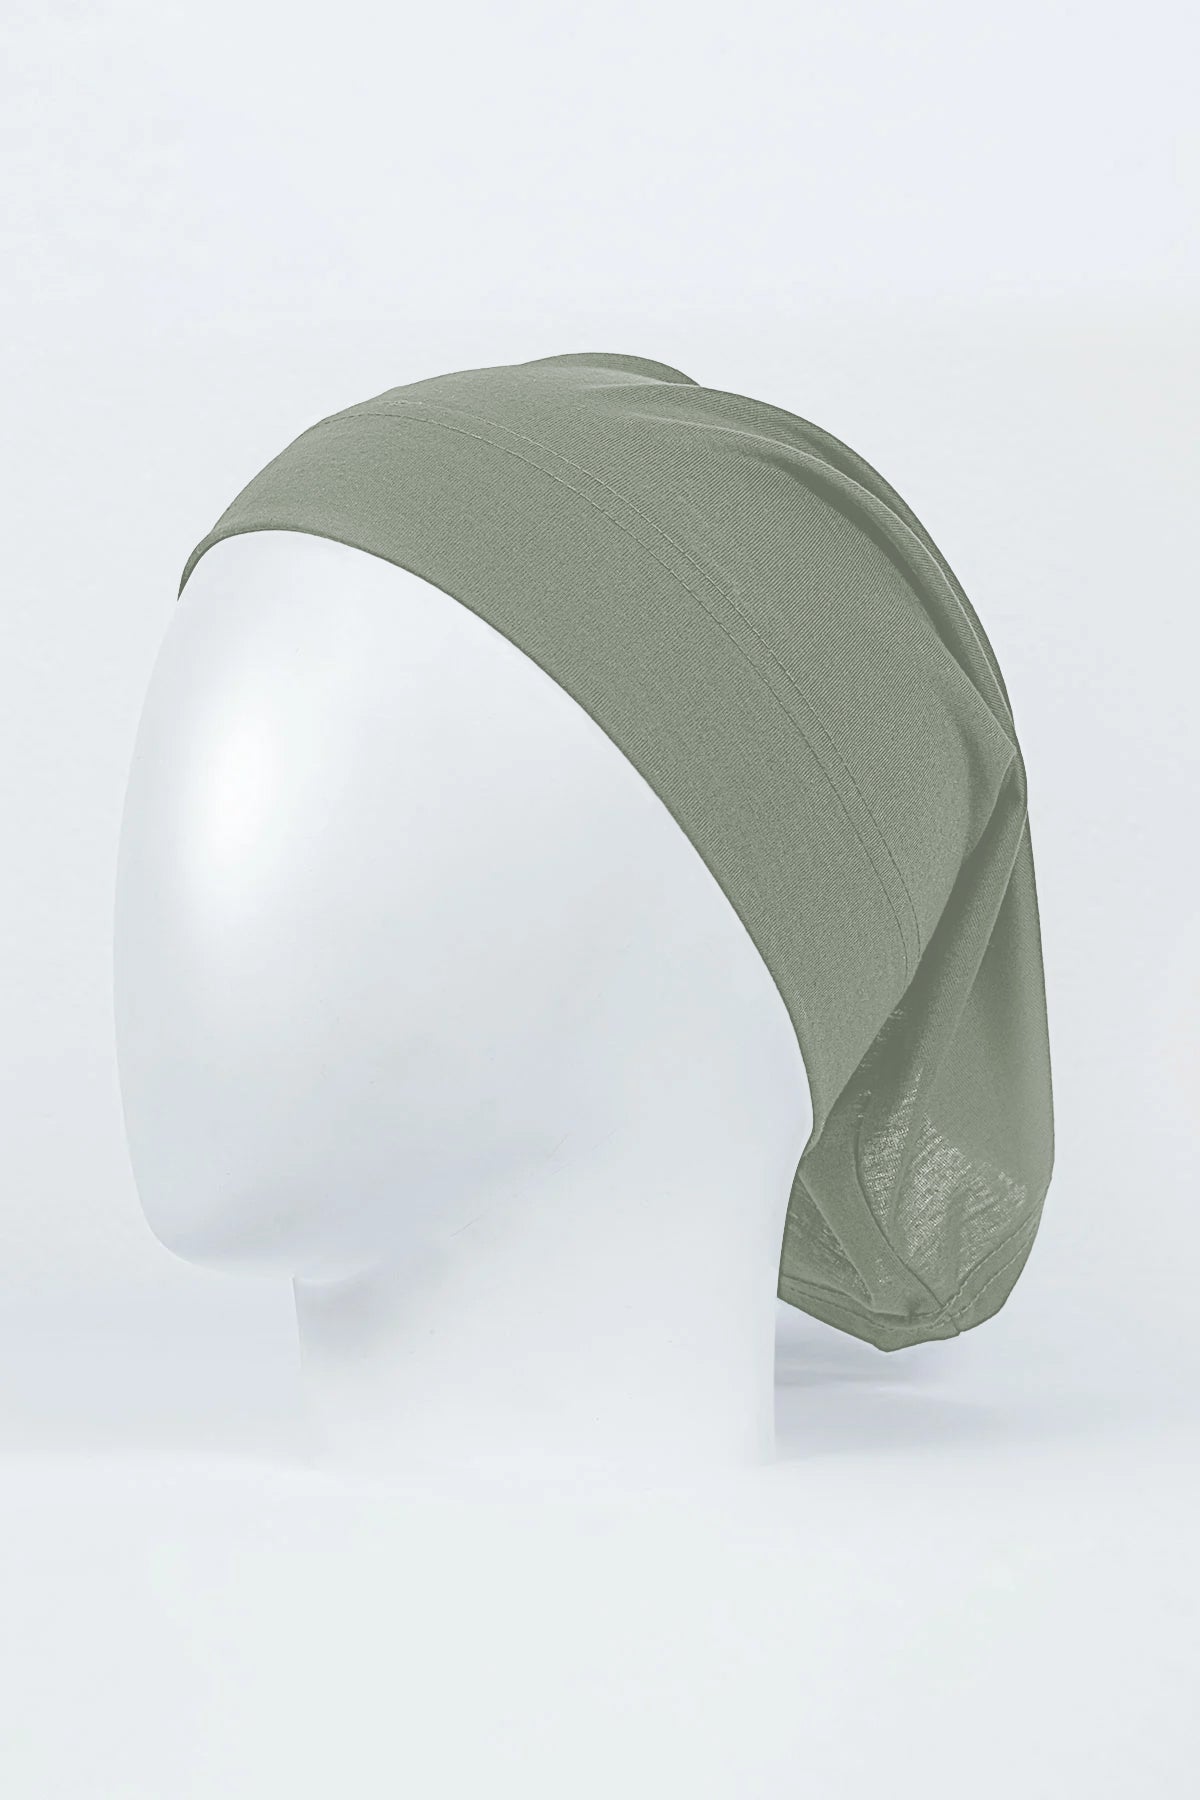 pistachio hijab tube cap